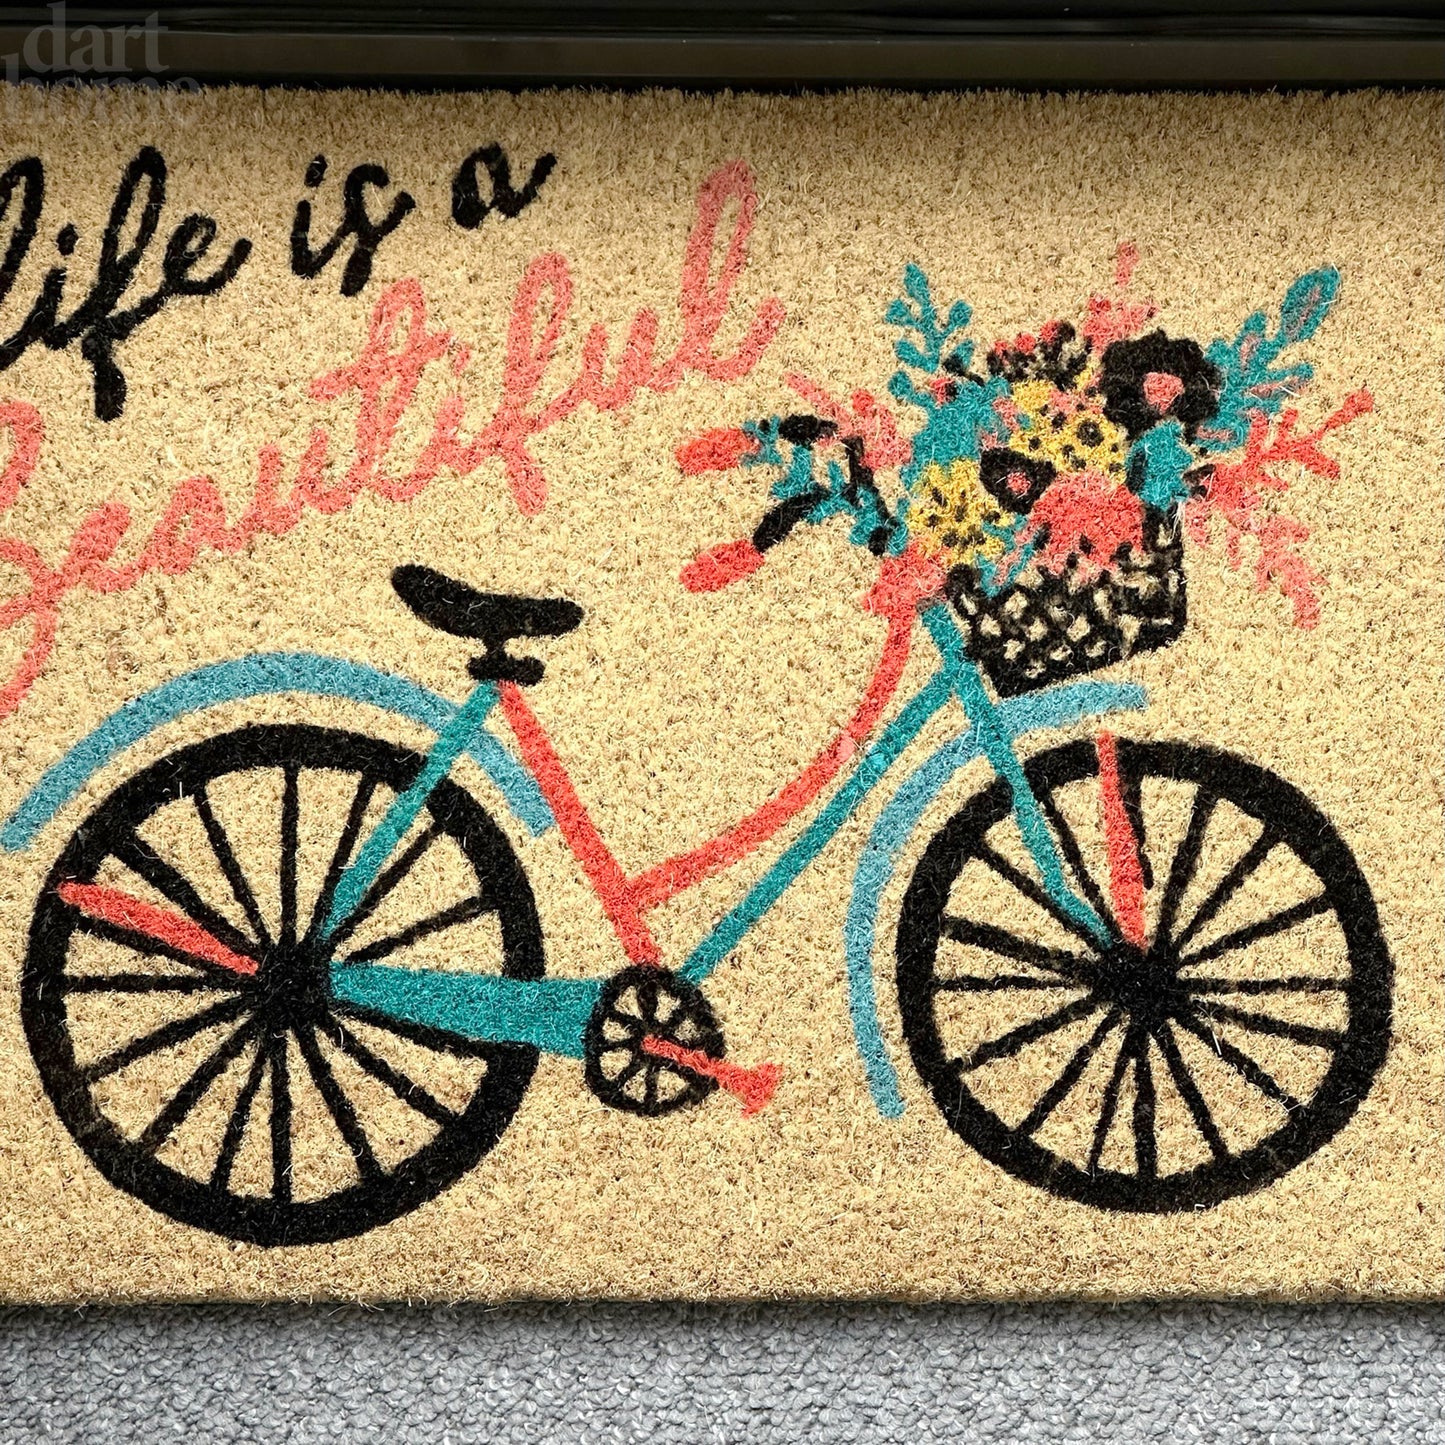 Life Is Beautiful Script Bicycle Coir Door Mat